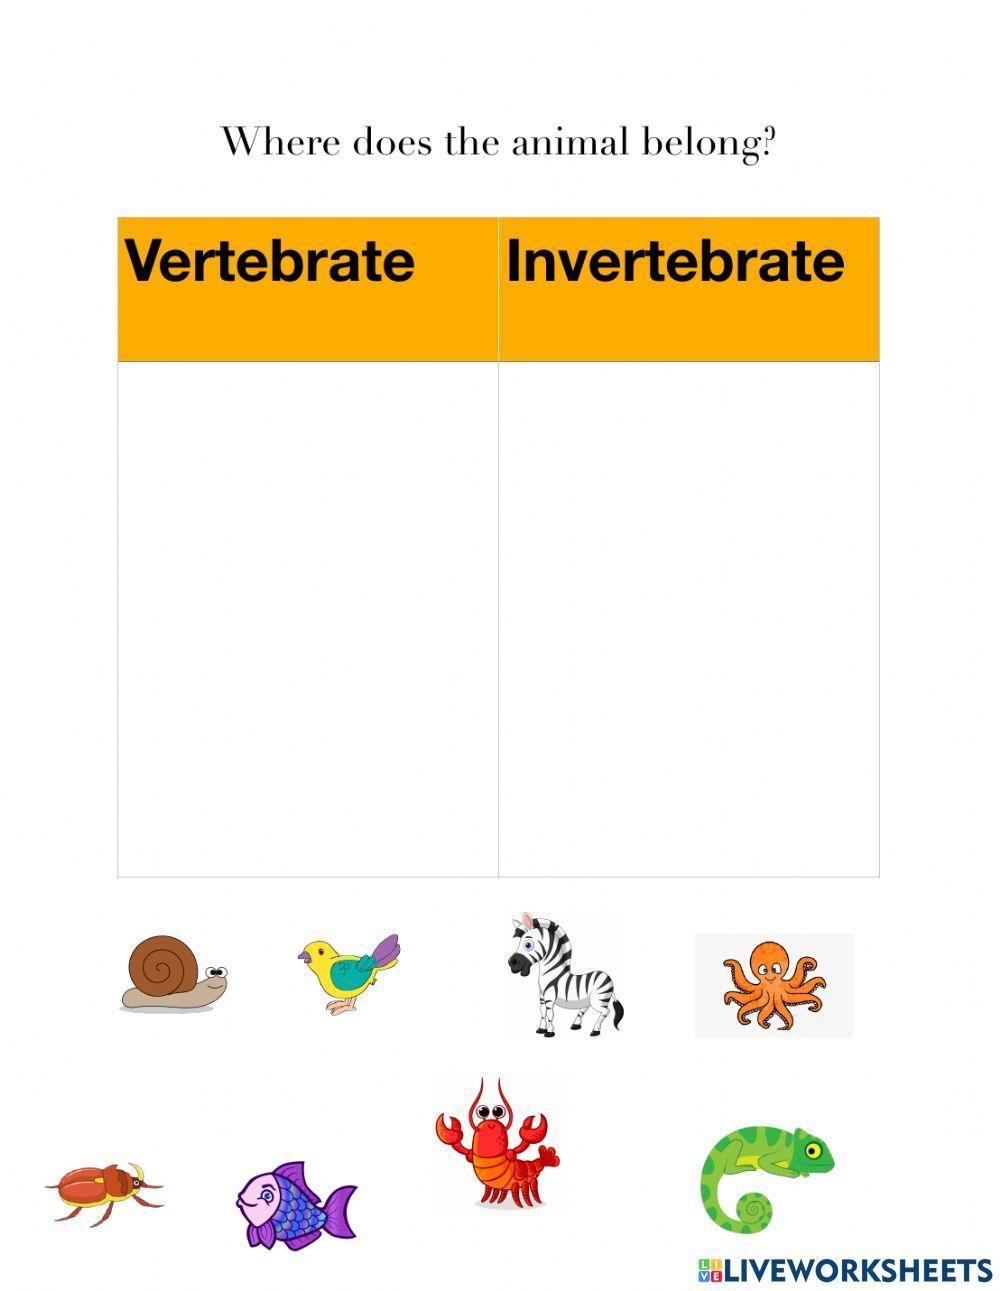 Vertebrates vs. Invertebrates